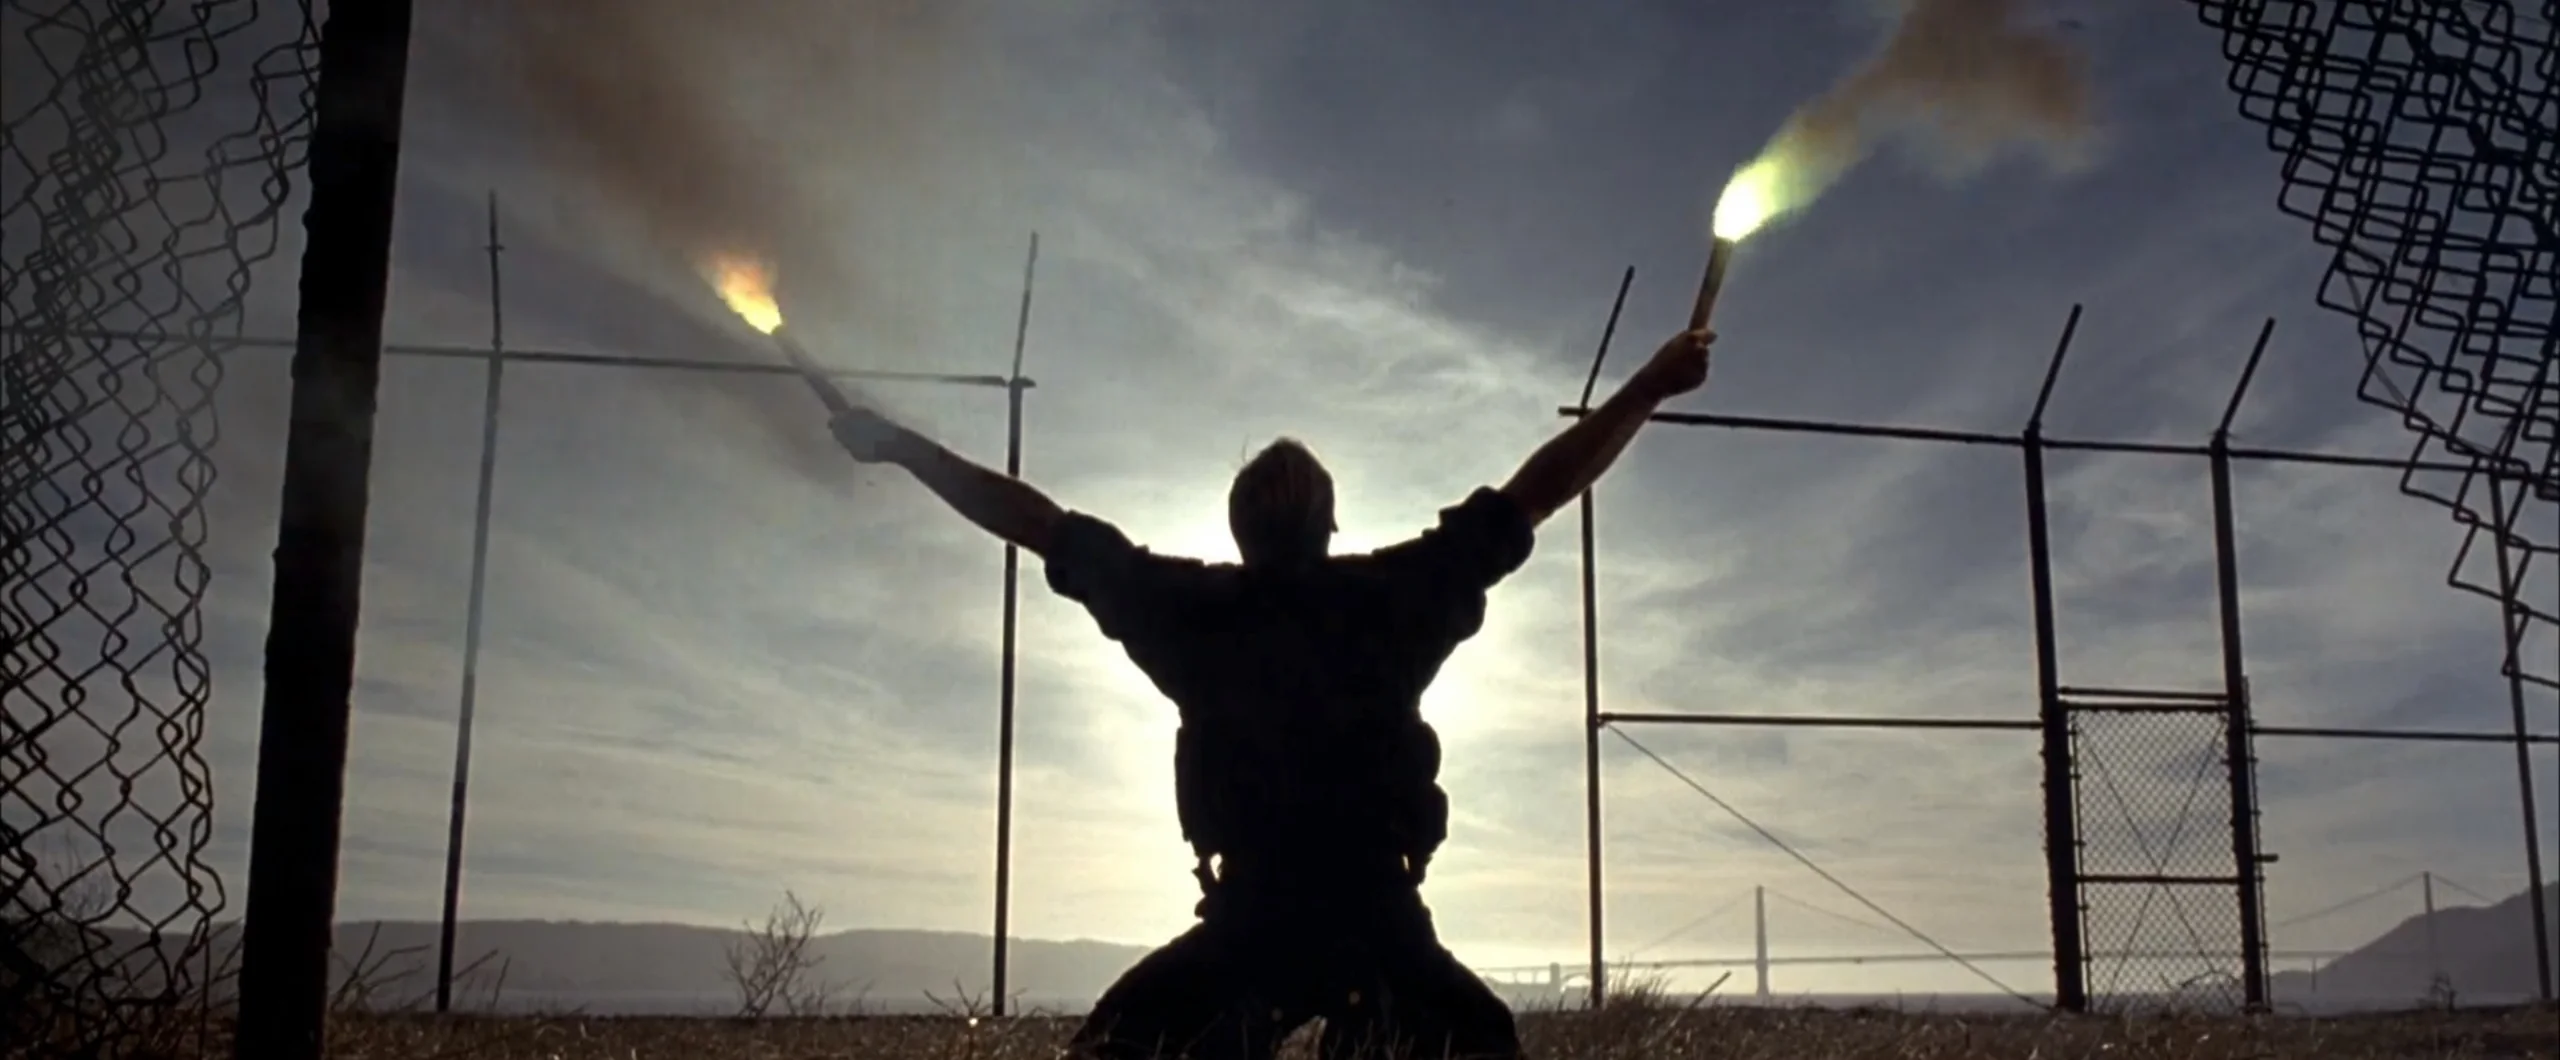 14 клонов Die Hard лучше «Небоскреба» - фото 1